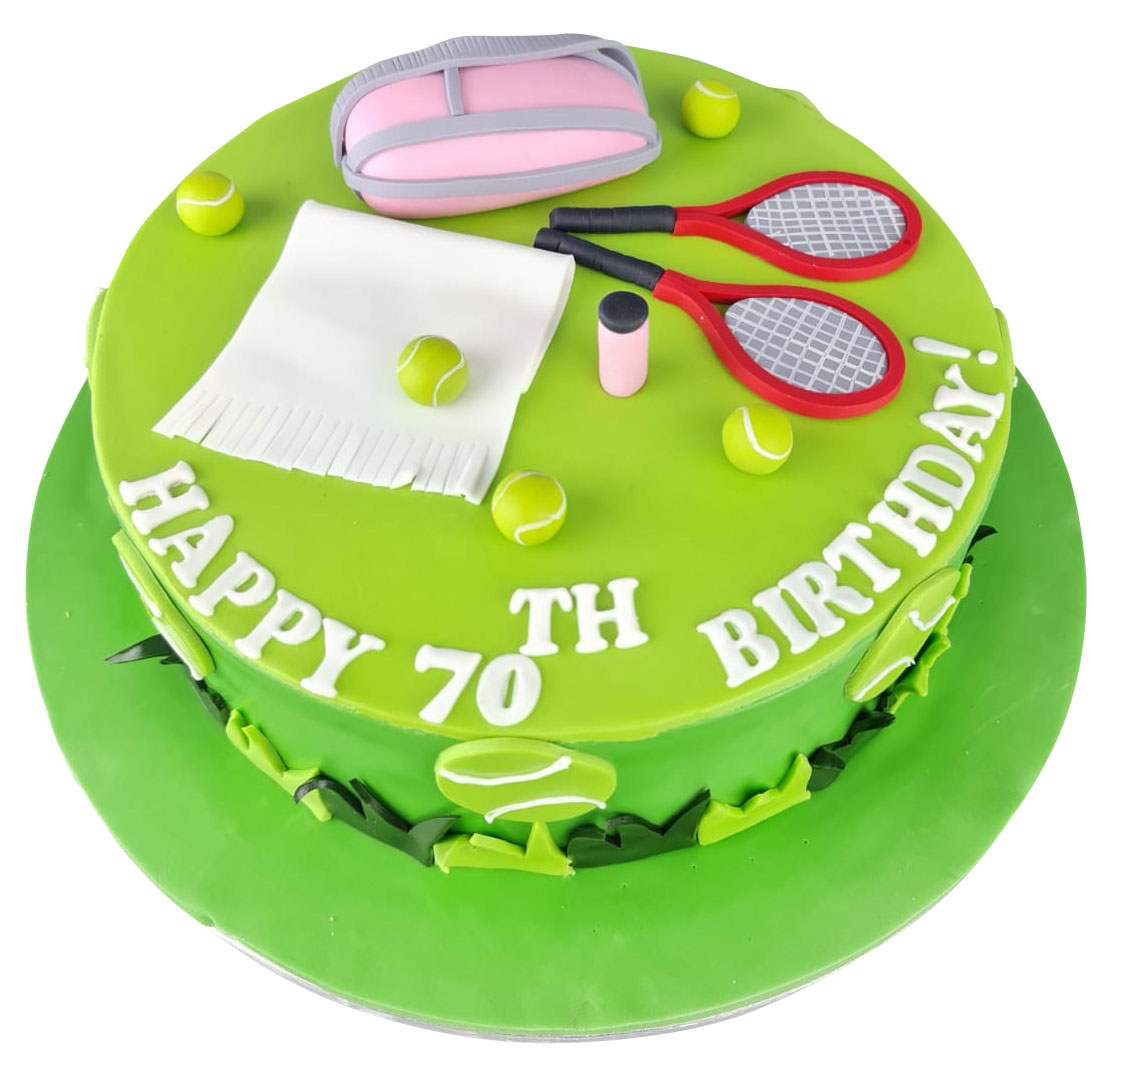 Wimbledon Tennis Theme Cake